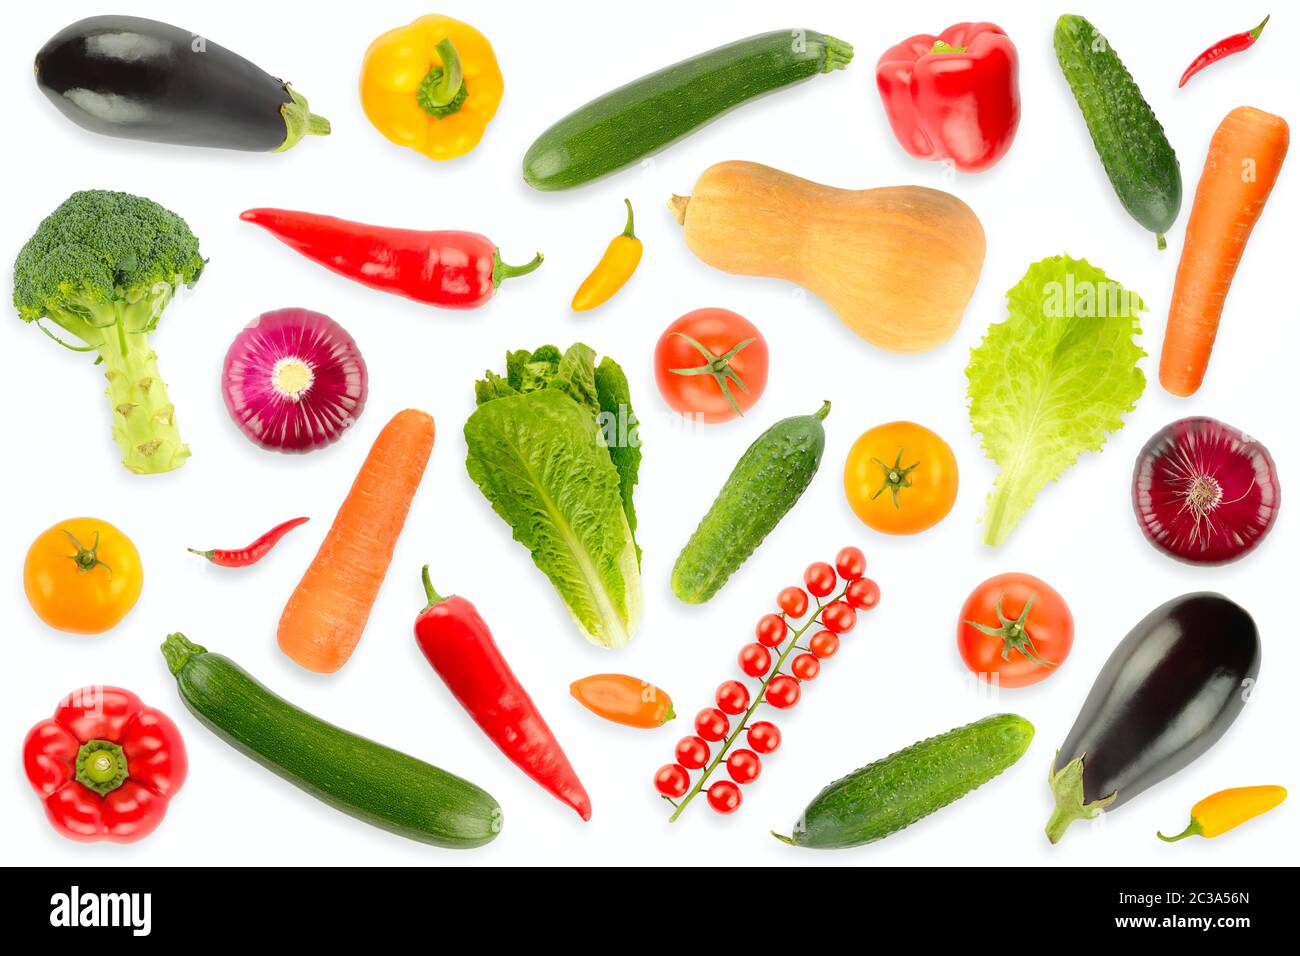 Vista dall'alto su una collezione di verdure fresche e frutta isolate su sfondo bianco con ombra chiara. Foto Stock